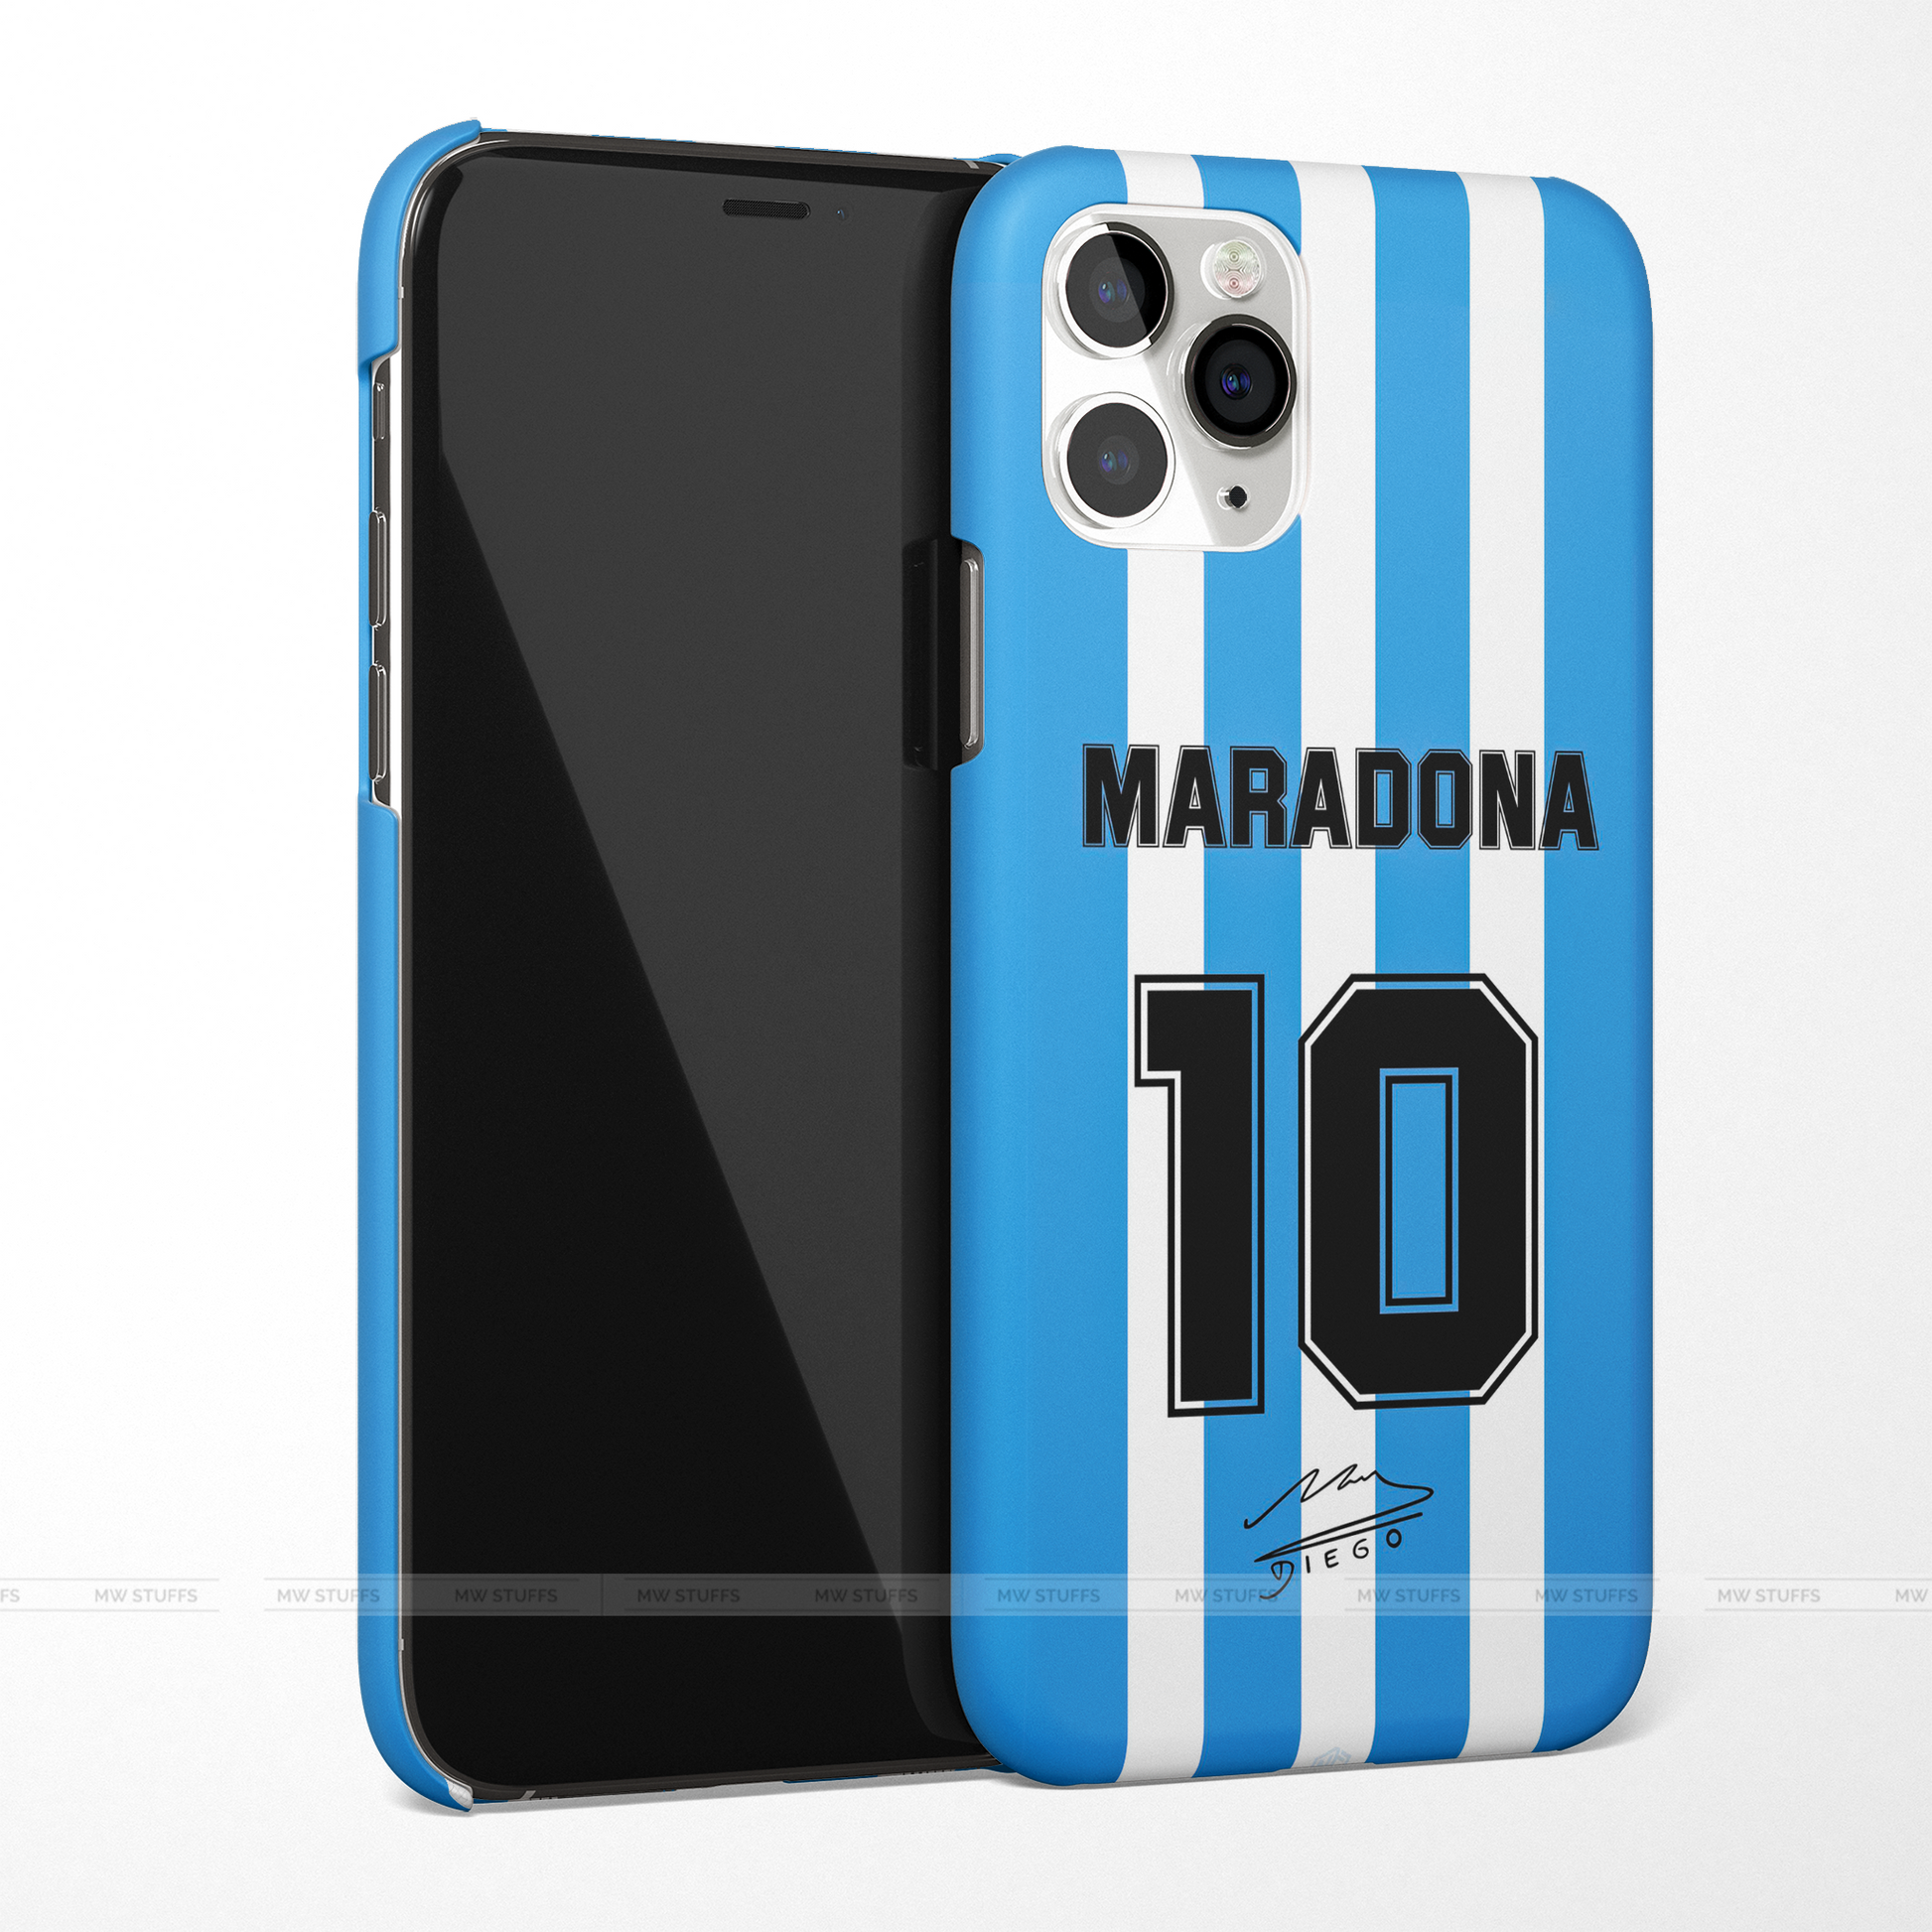 Maradona Jersey No.10 Matte Case - MW Stuffs